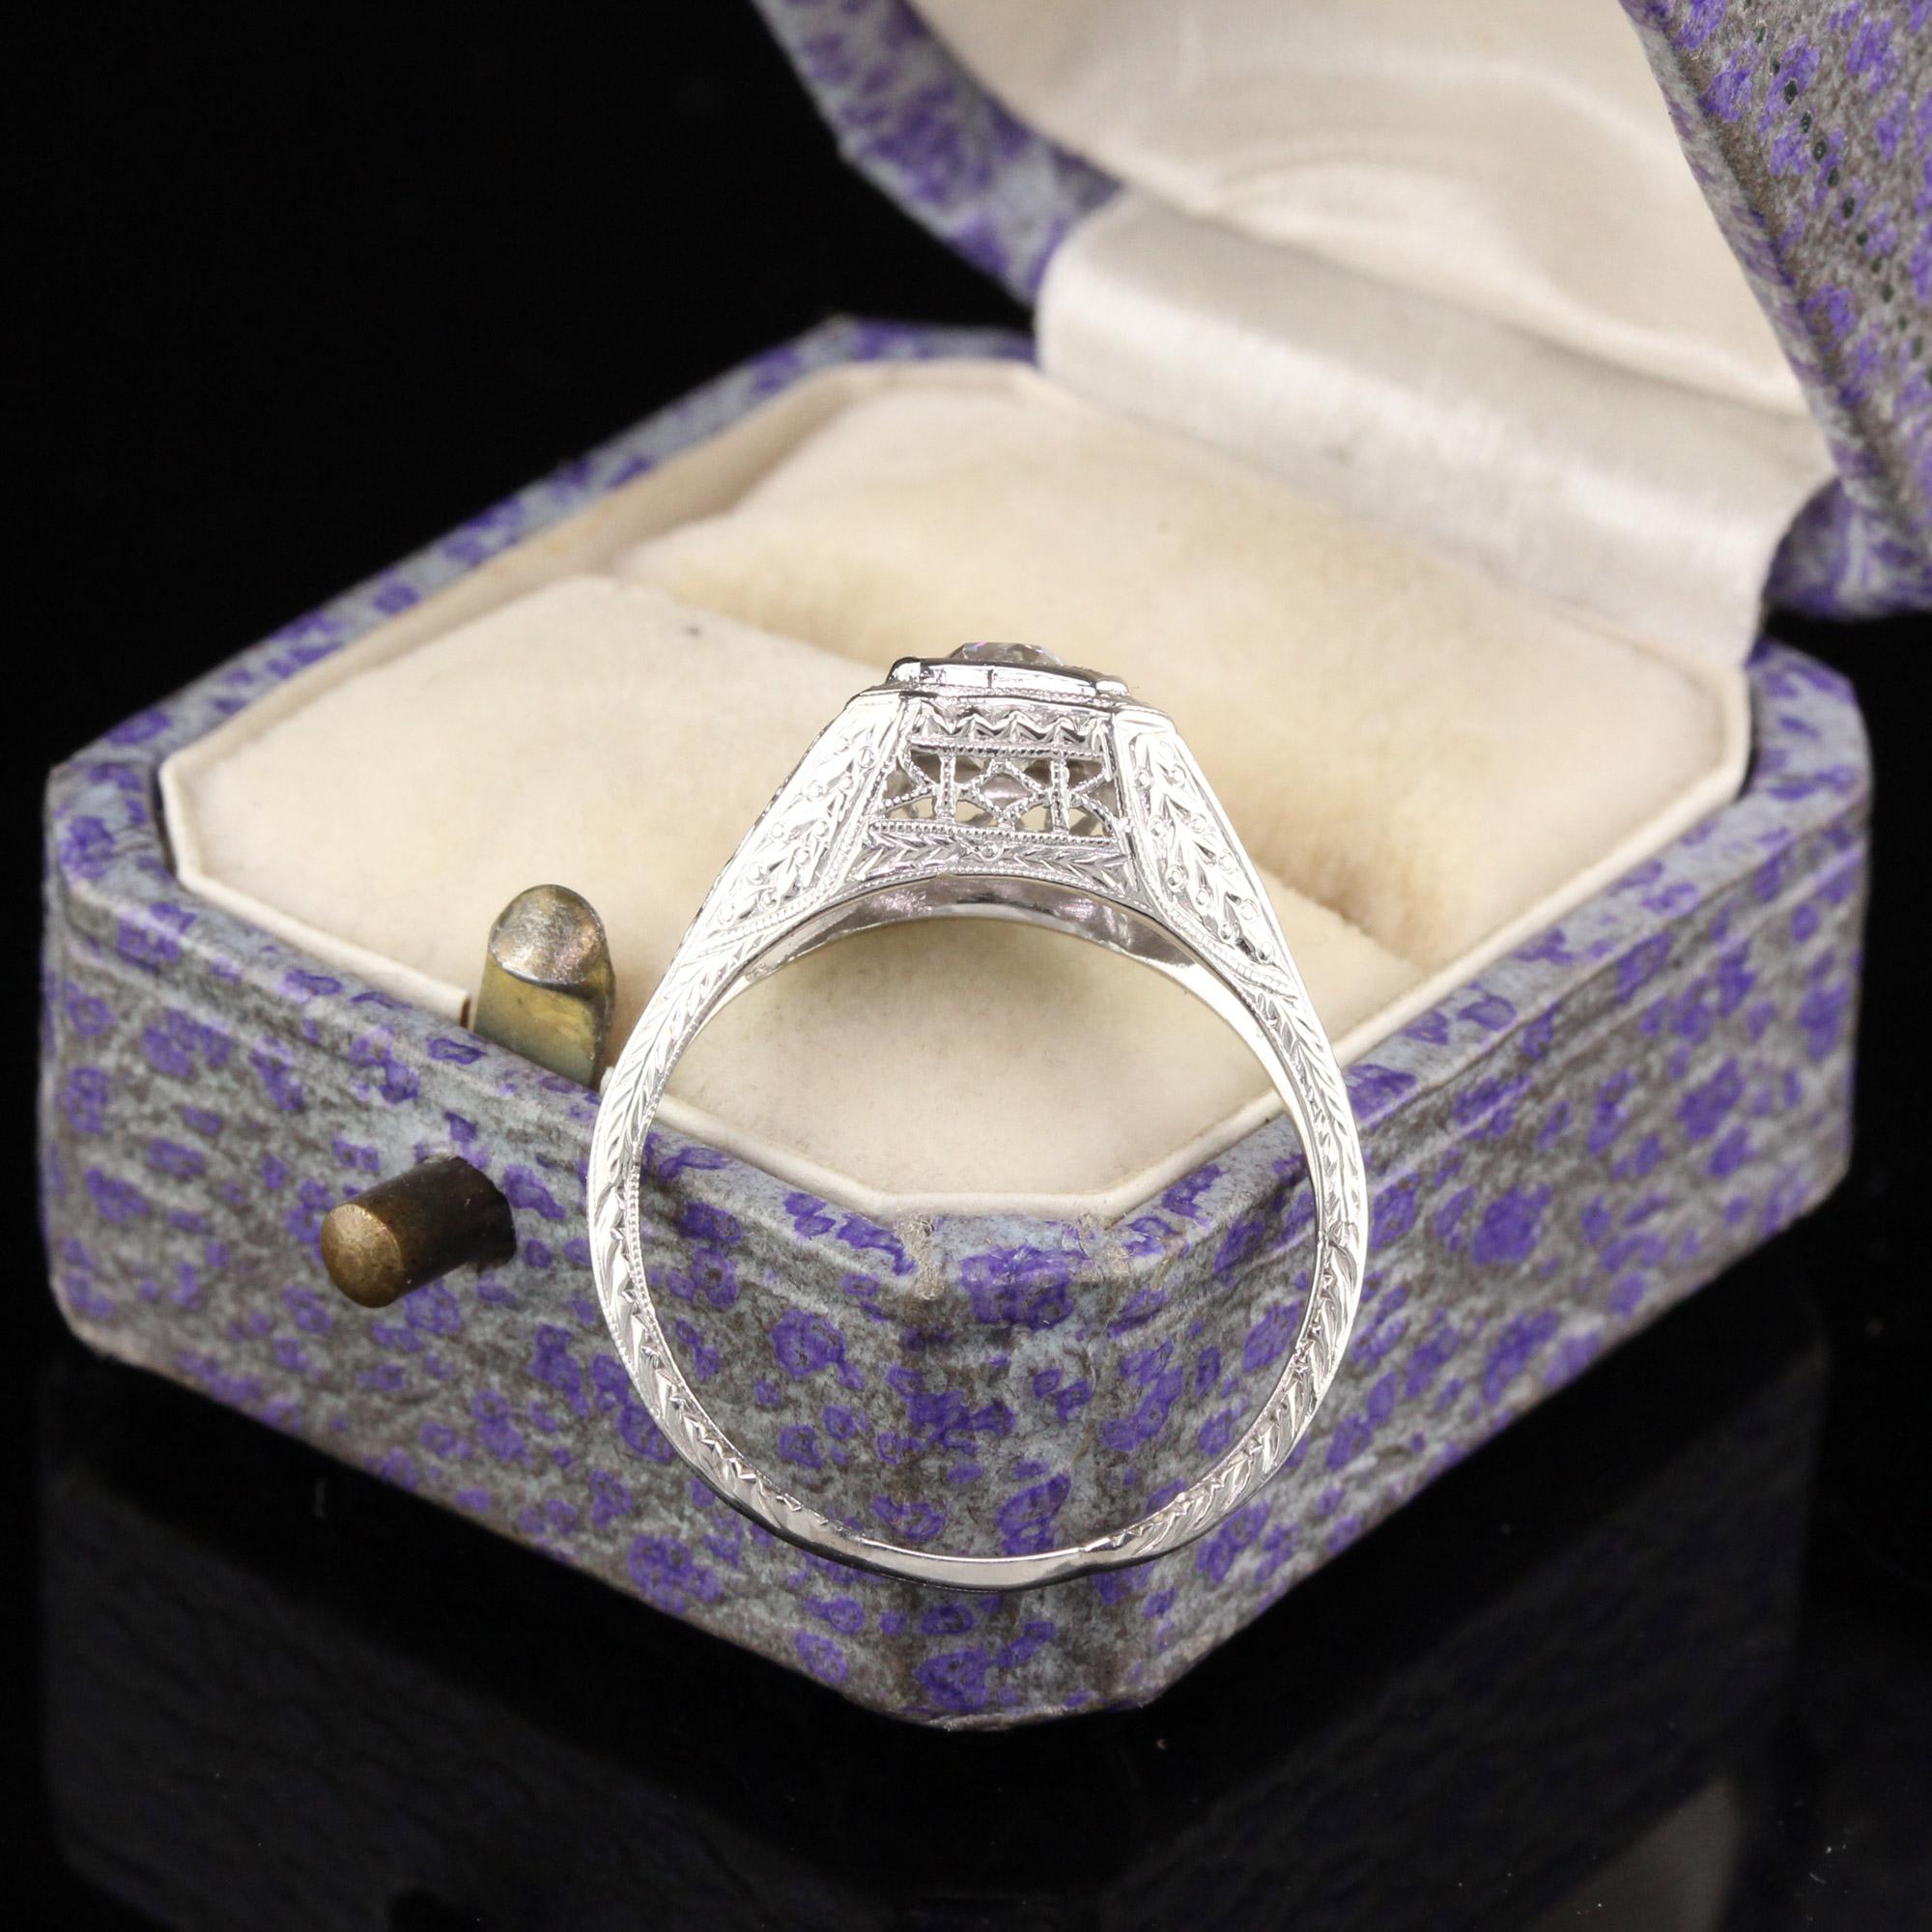 Old European Cut Antique Art Deco Platinum Diamond Engagement Ring